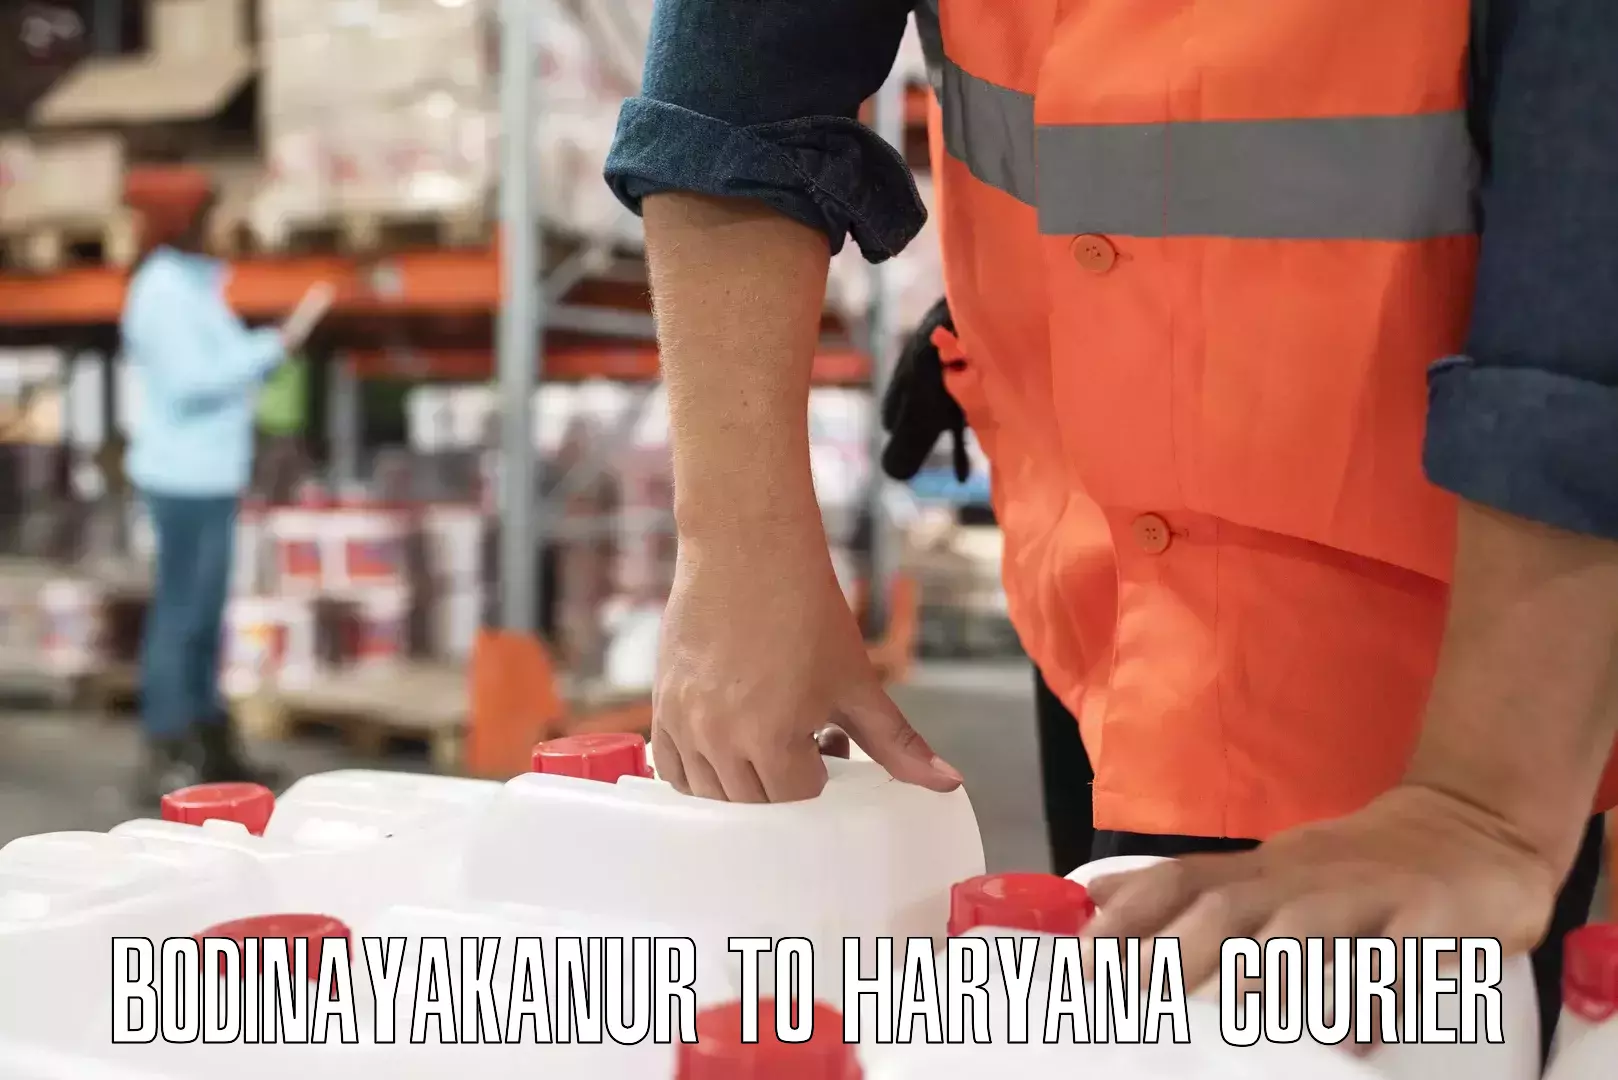 Ground shipping Bodinayakanur to Haryana